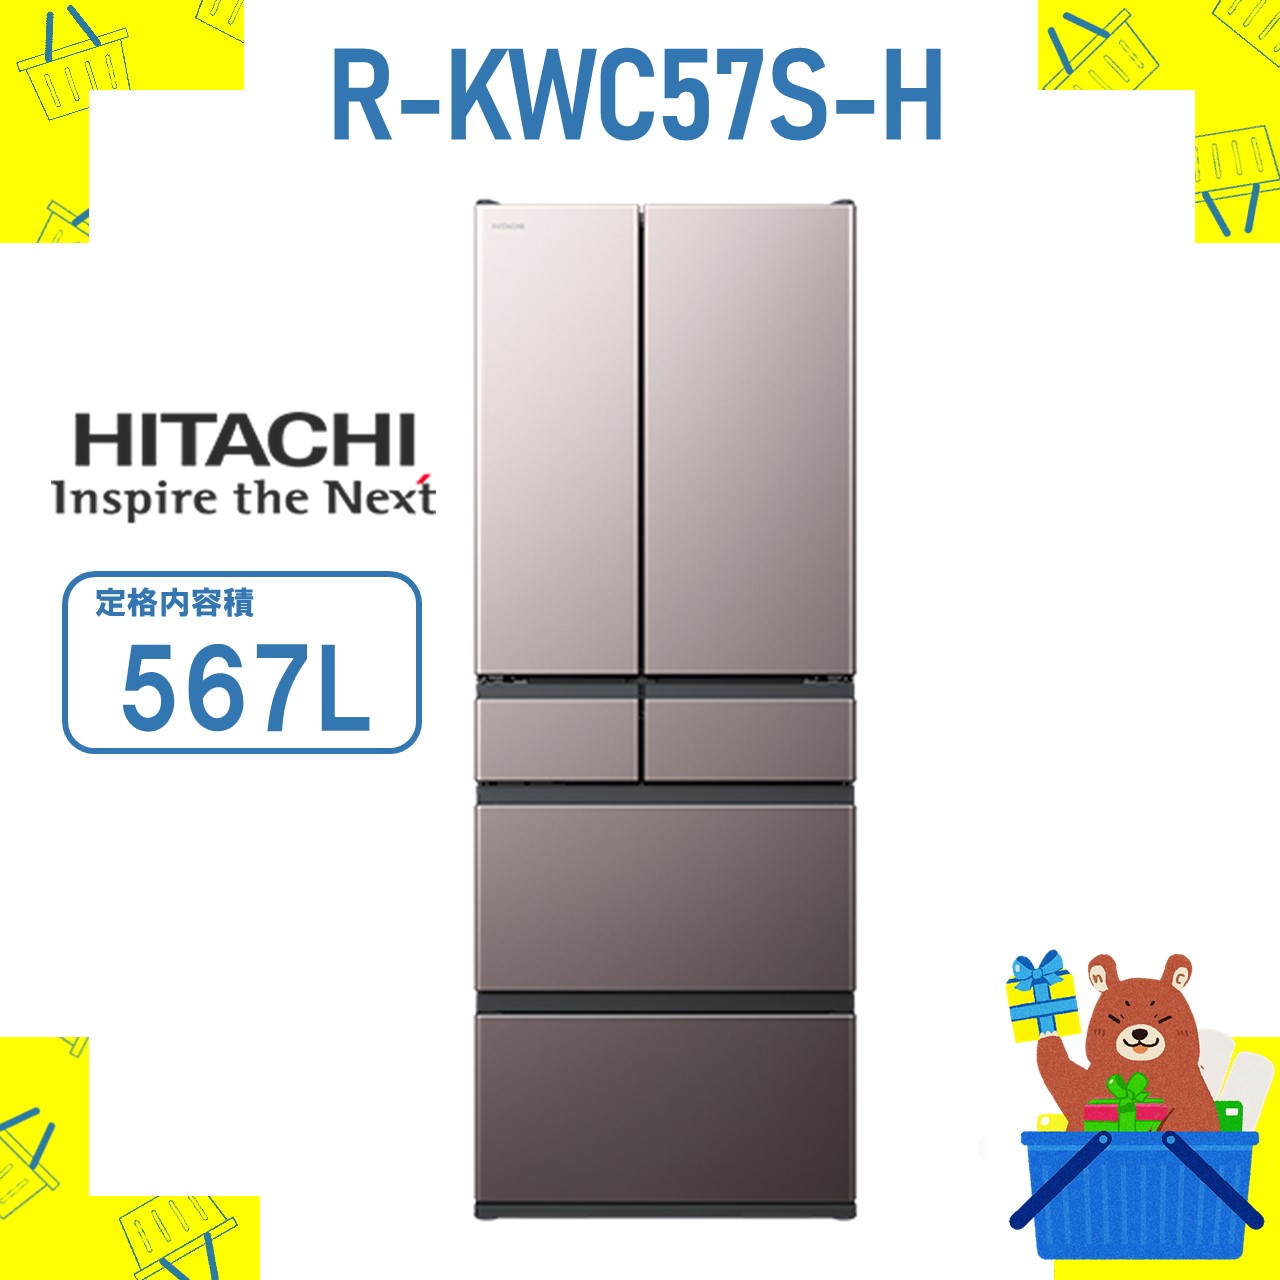 楽天市場】大型冷蔵庫 省エネ RKWC57SH R-KWC57S-H 日立 567L 